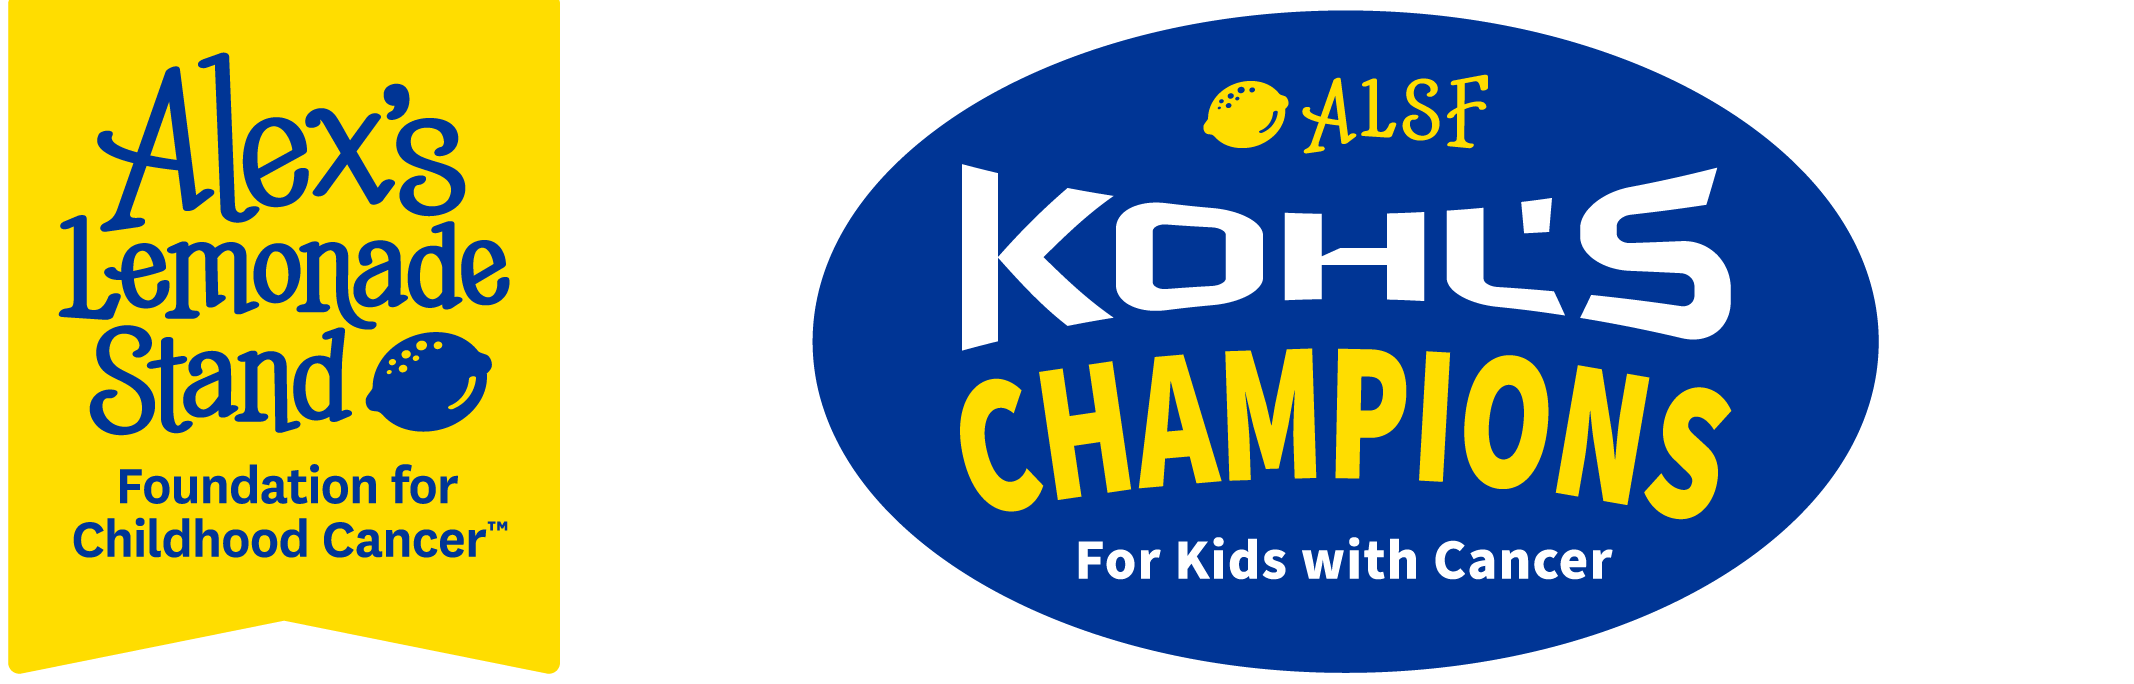 ALSF Kick-It Champions